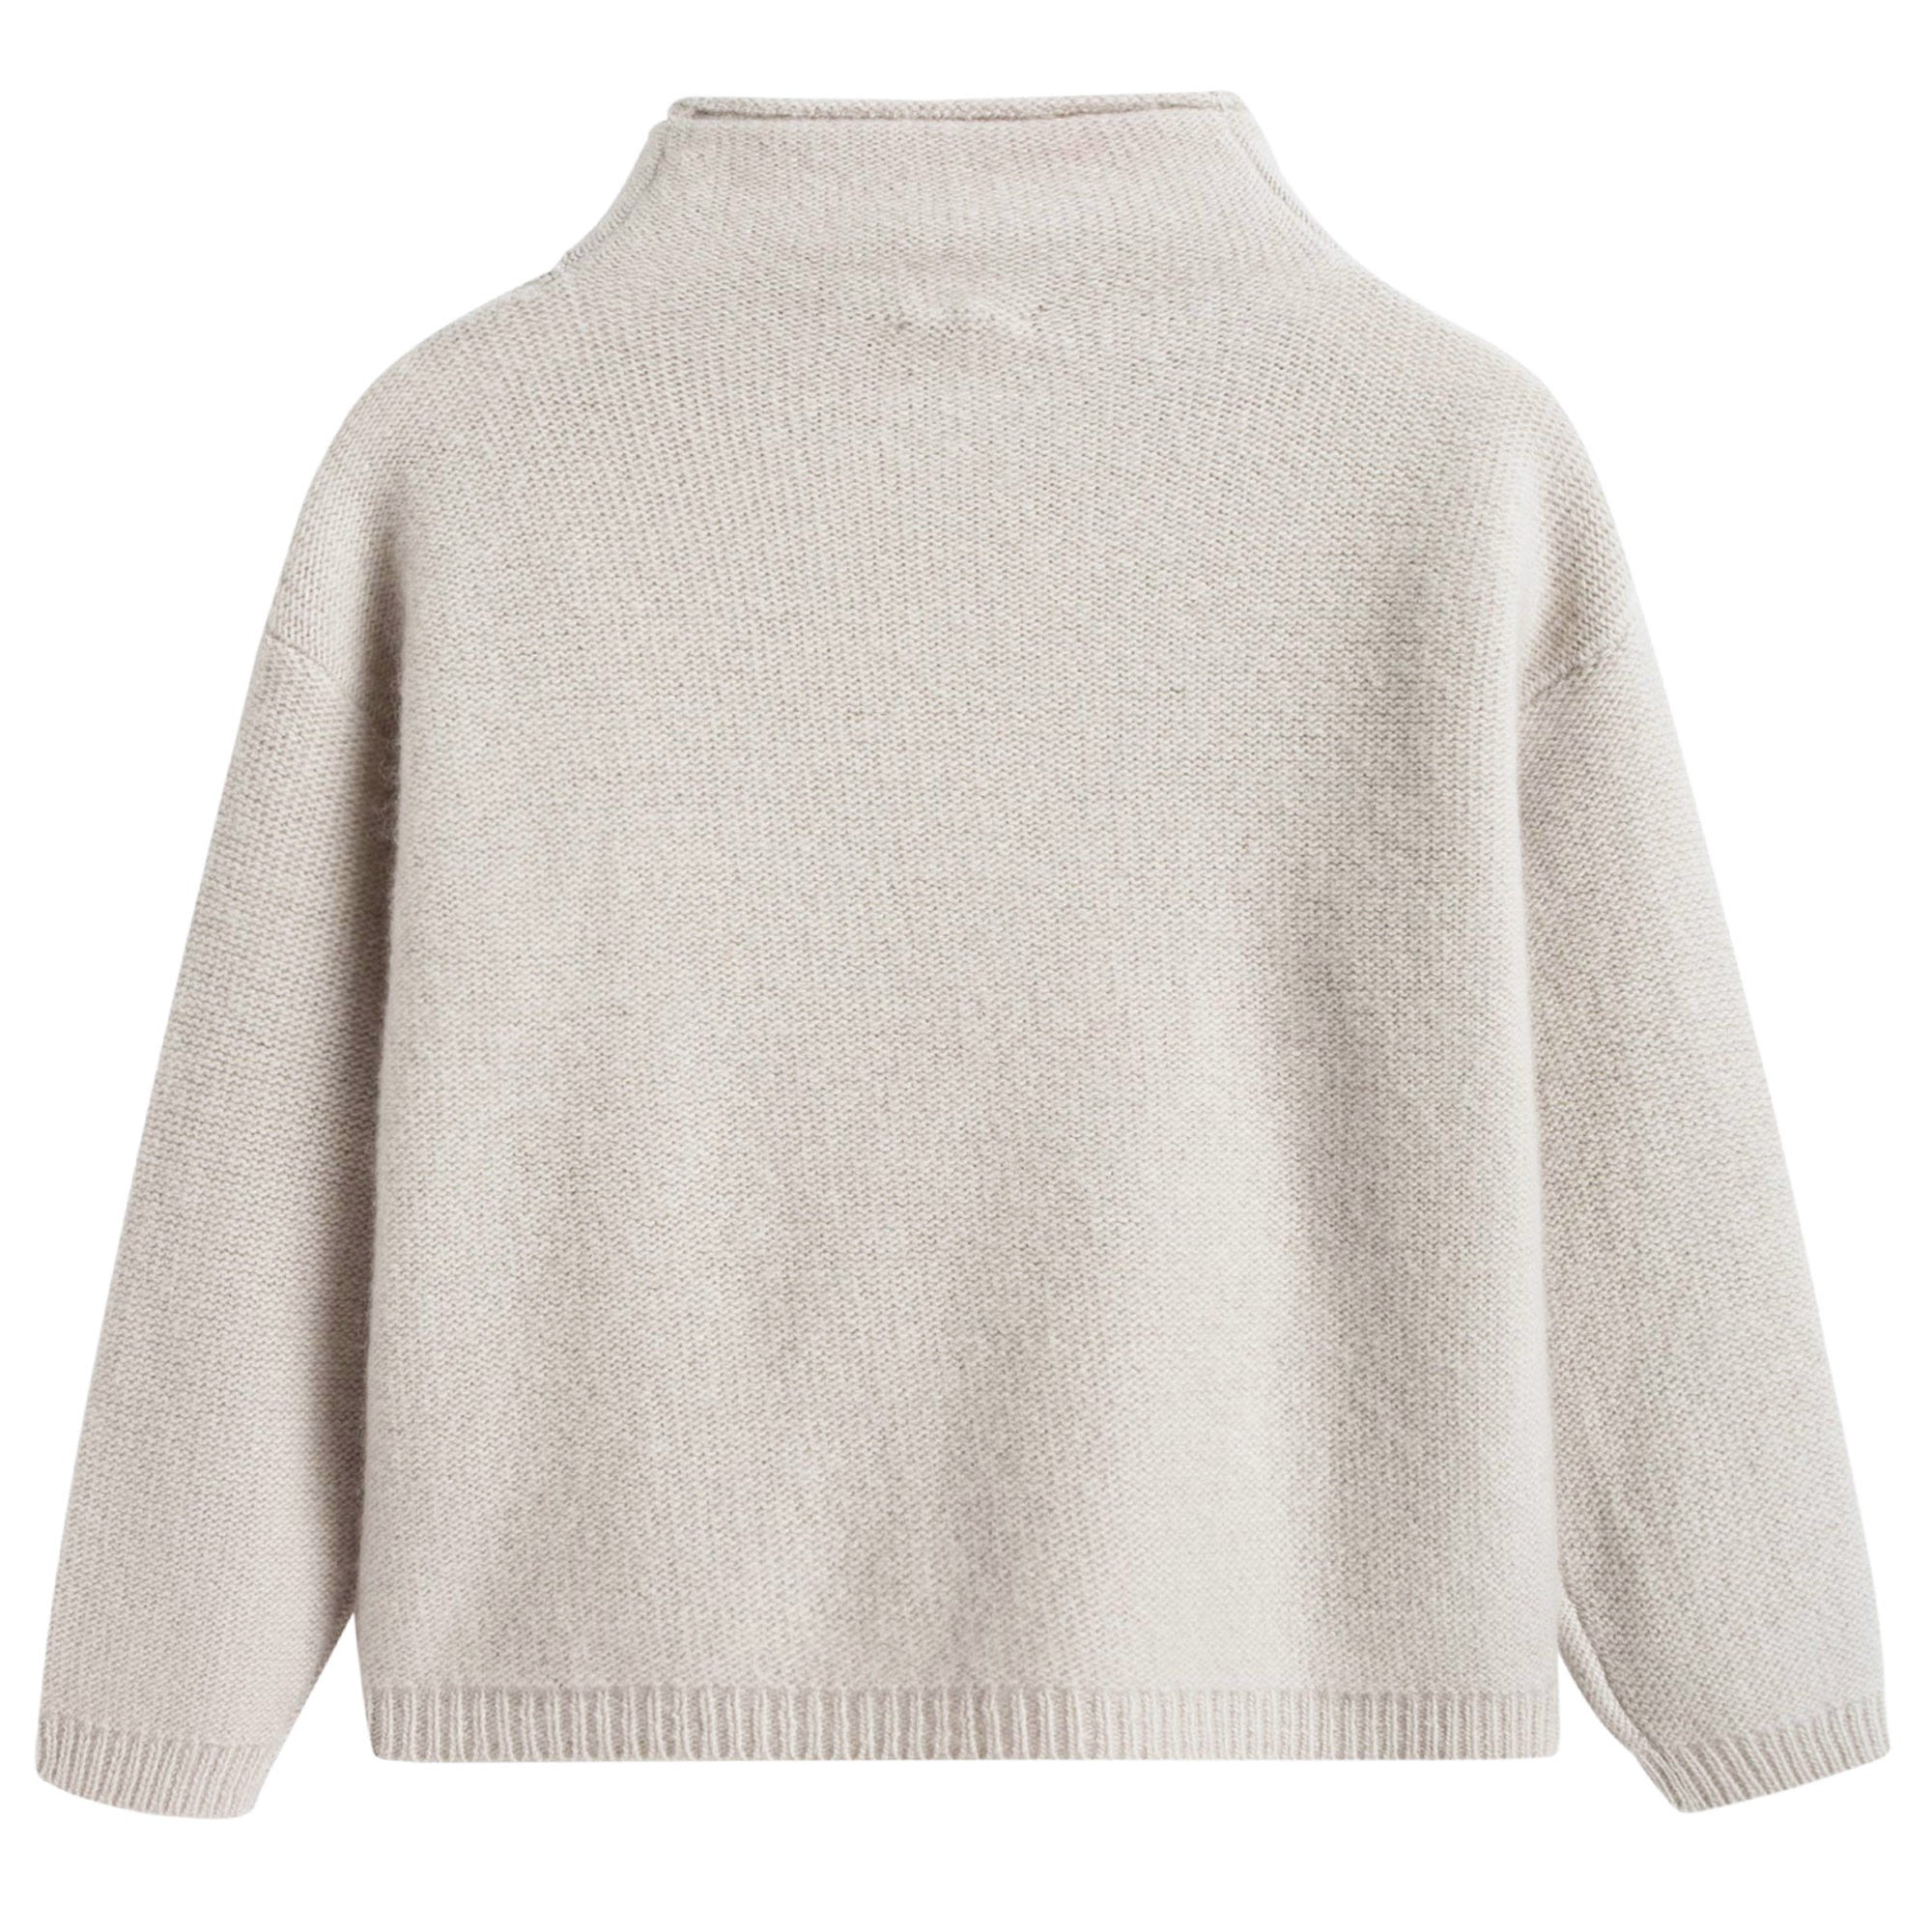 Girls Beige Wool Sweater With Pom-Pom Trims